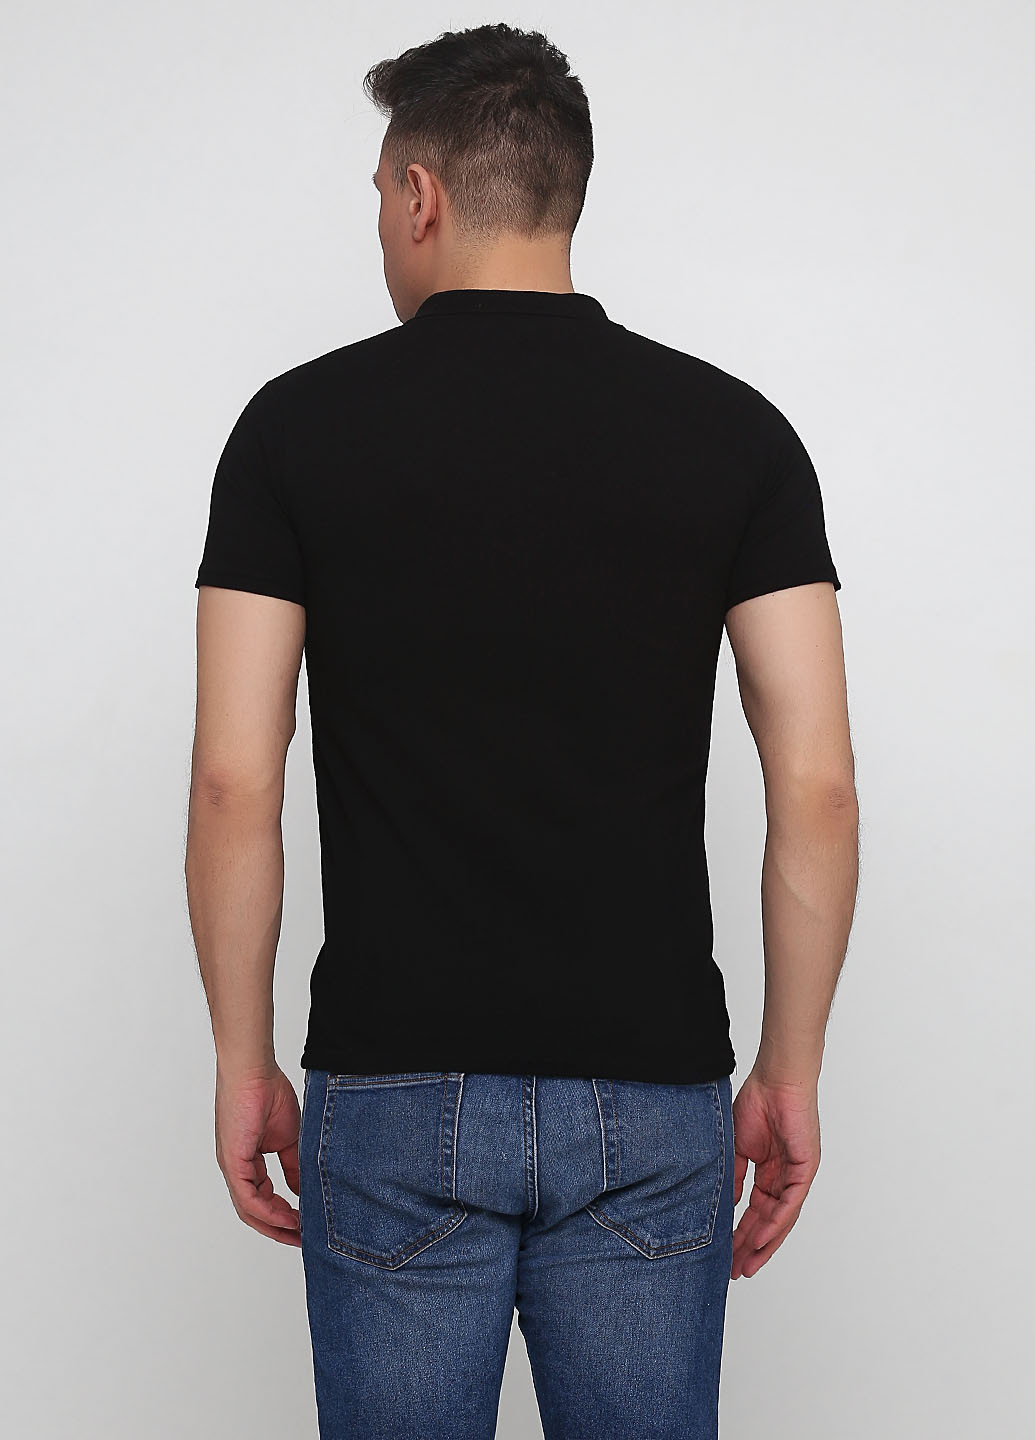 Черная футболка-поло для мужчин West Wint однотонная